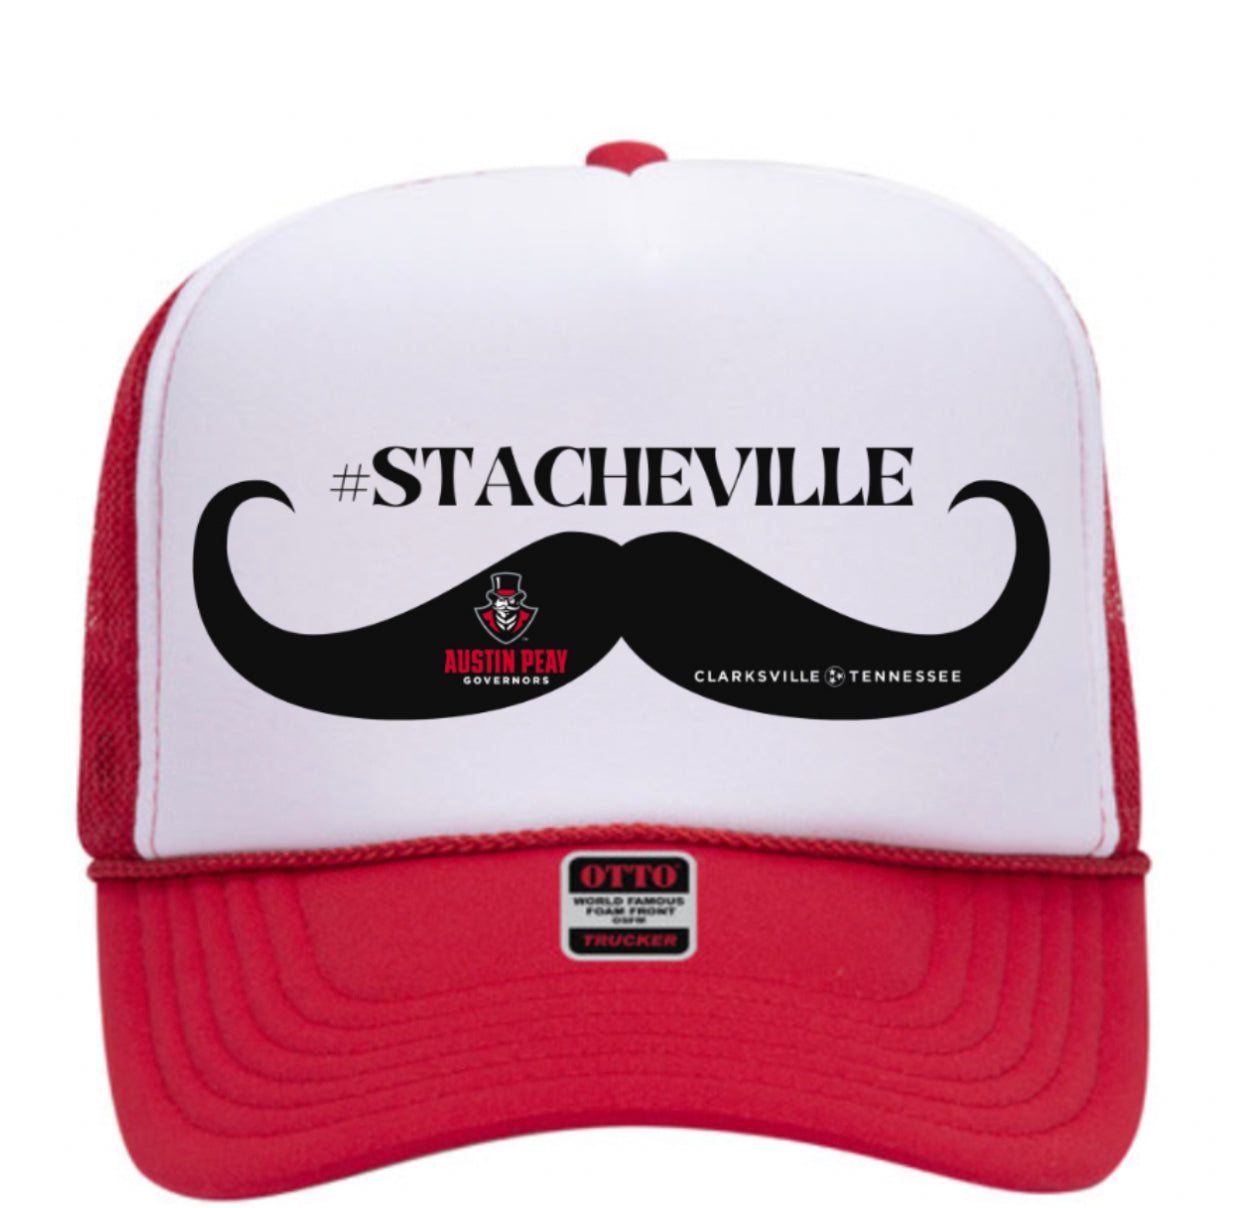 STACHEVILLE Trucker Hat